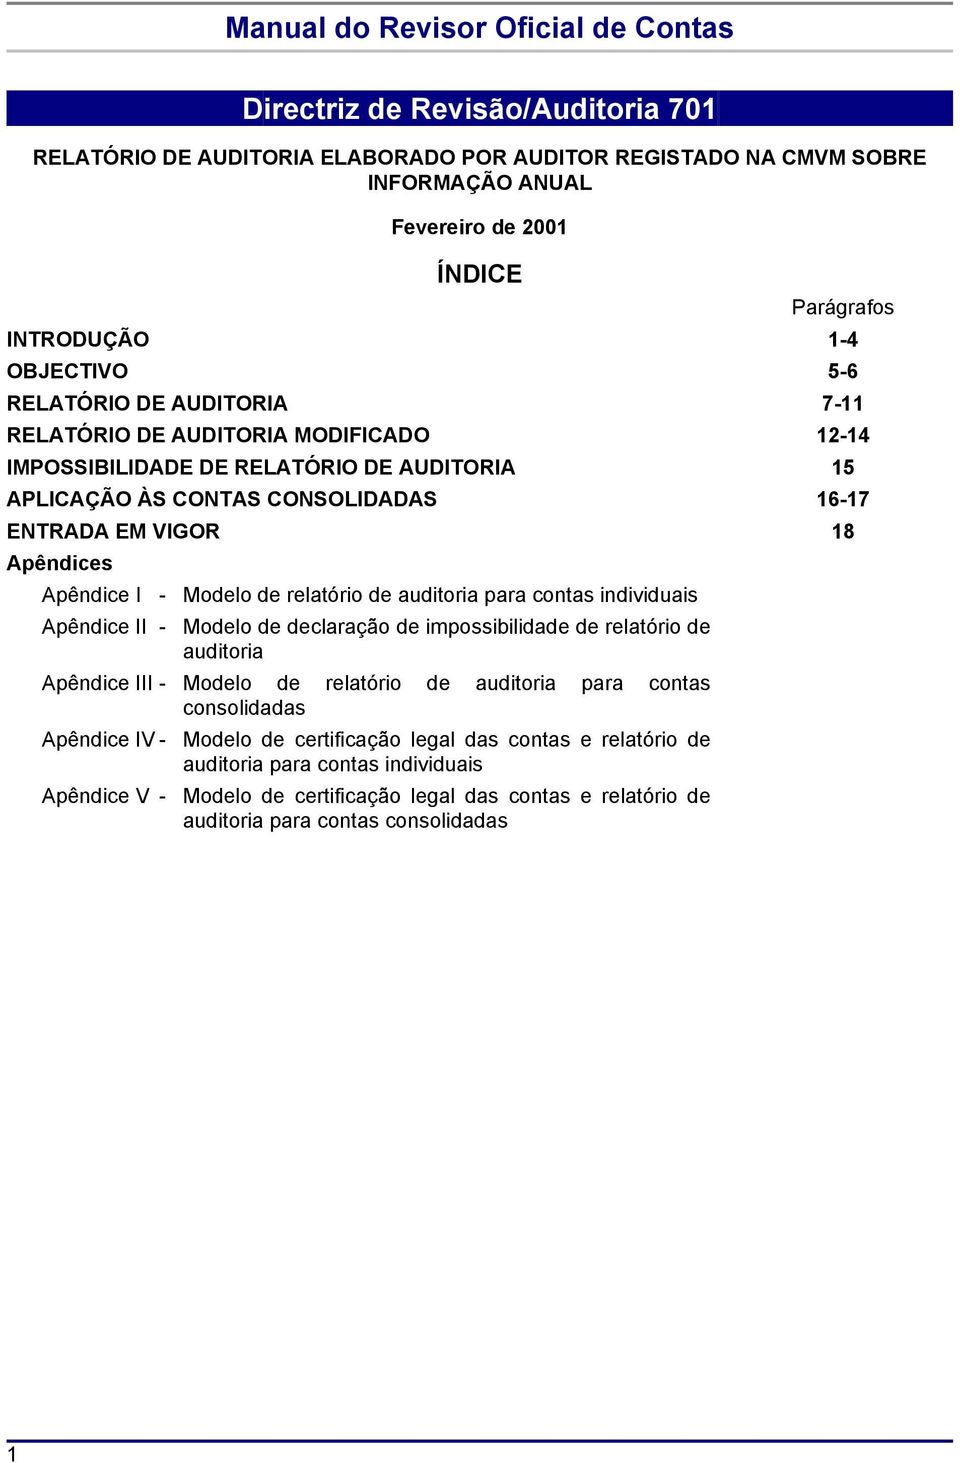 relatório de auditoria para contas individuais Apêndice II - Modelo de declaração de impossibilidade de relatório de auditoria Apêndice III - Modelo de relatório de auditoria para contas consolidadas